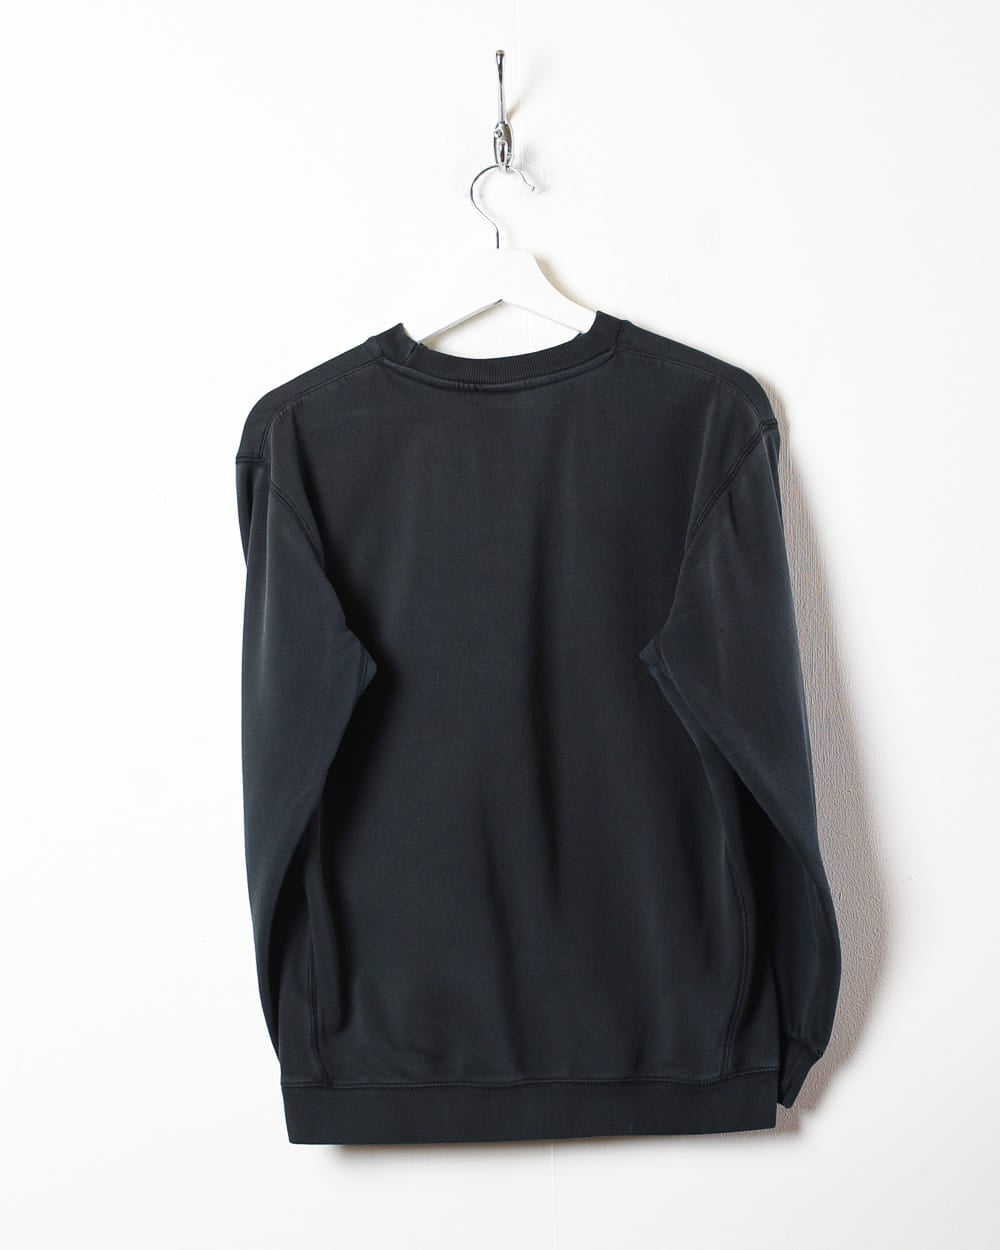 Black Nike Sweatshirt - X-Small